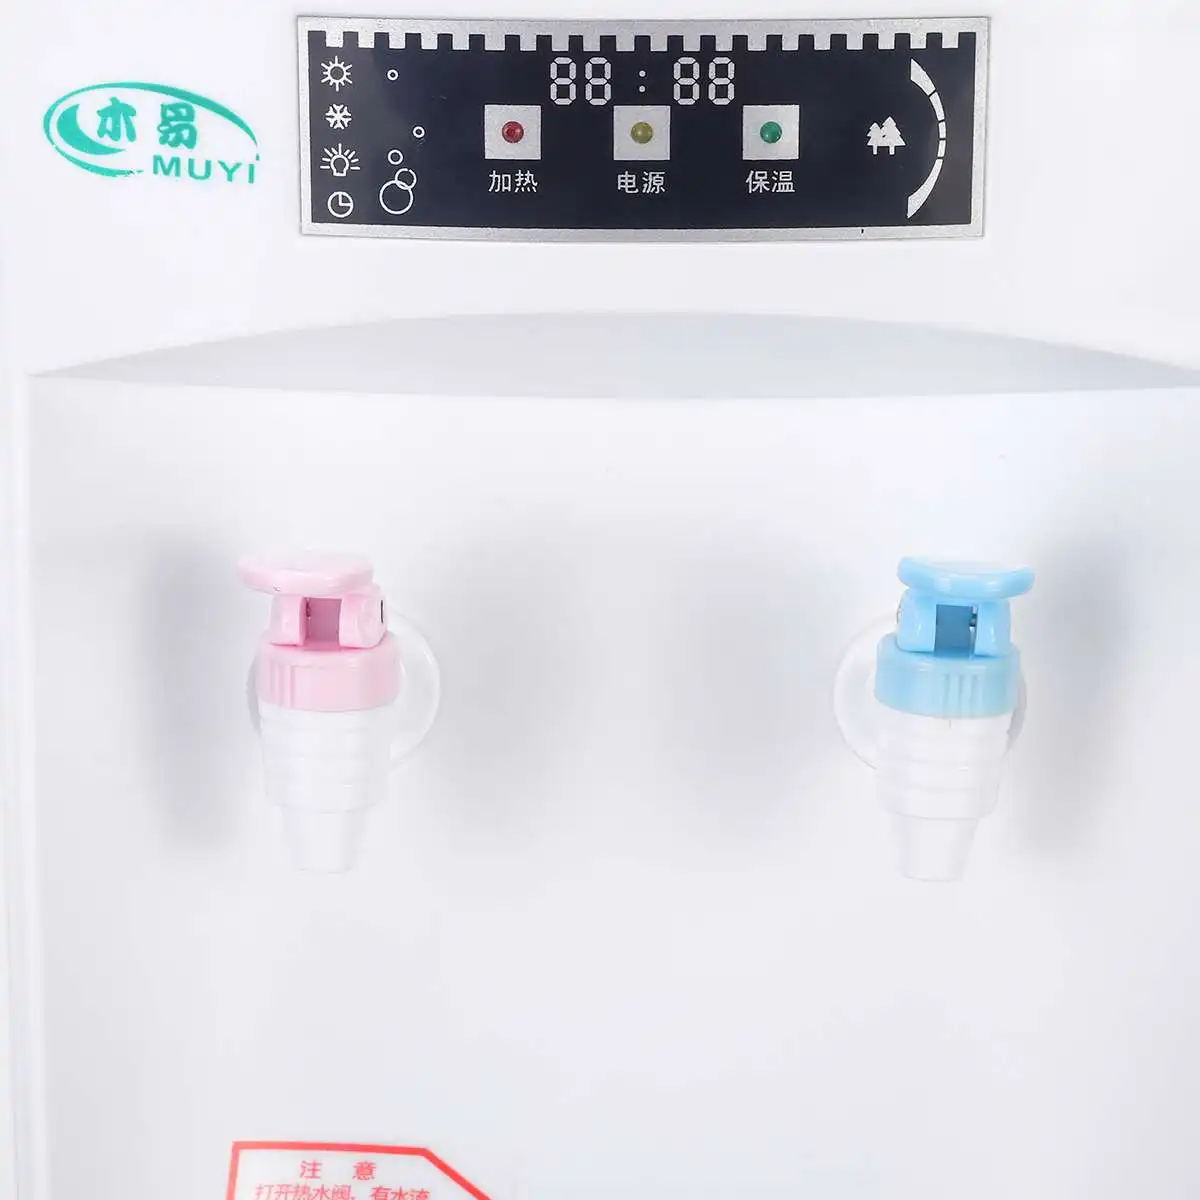 Настольный диспенсер для воды, фильтр для воды, горячий/Теплый 550 в, Вт, съемное устройство для хранения воды, светильник, индикатор, 3 режима